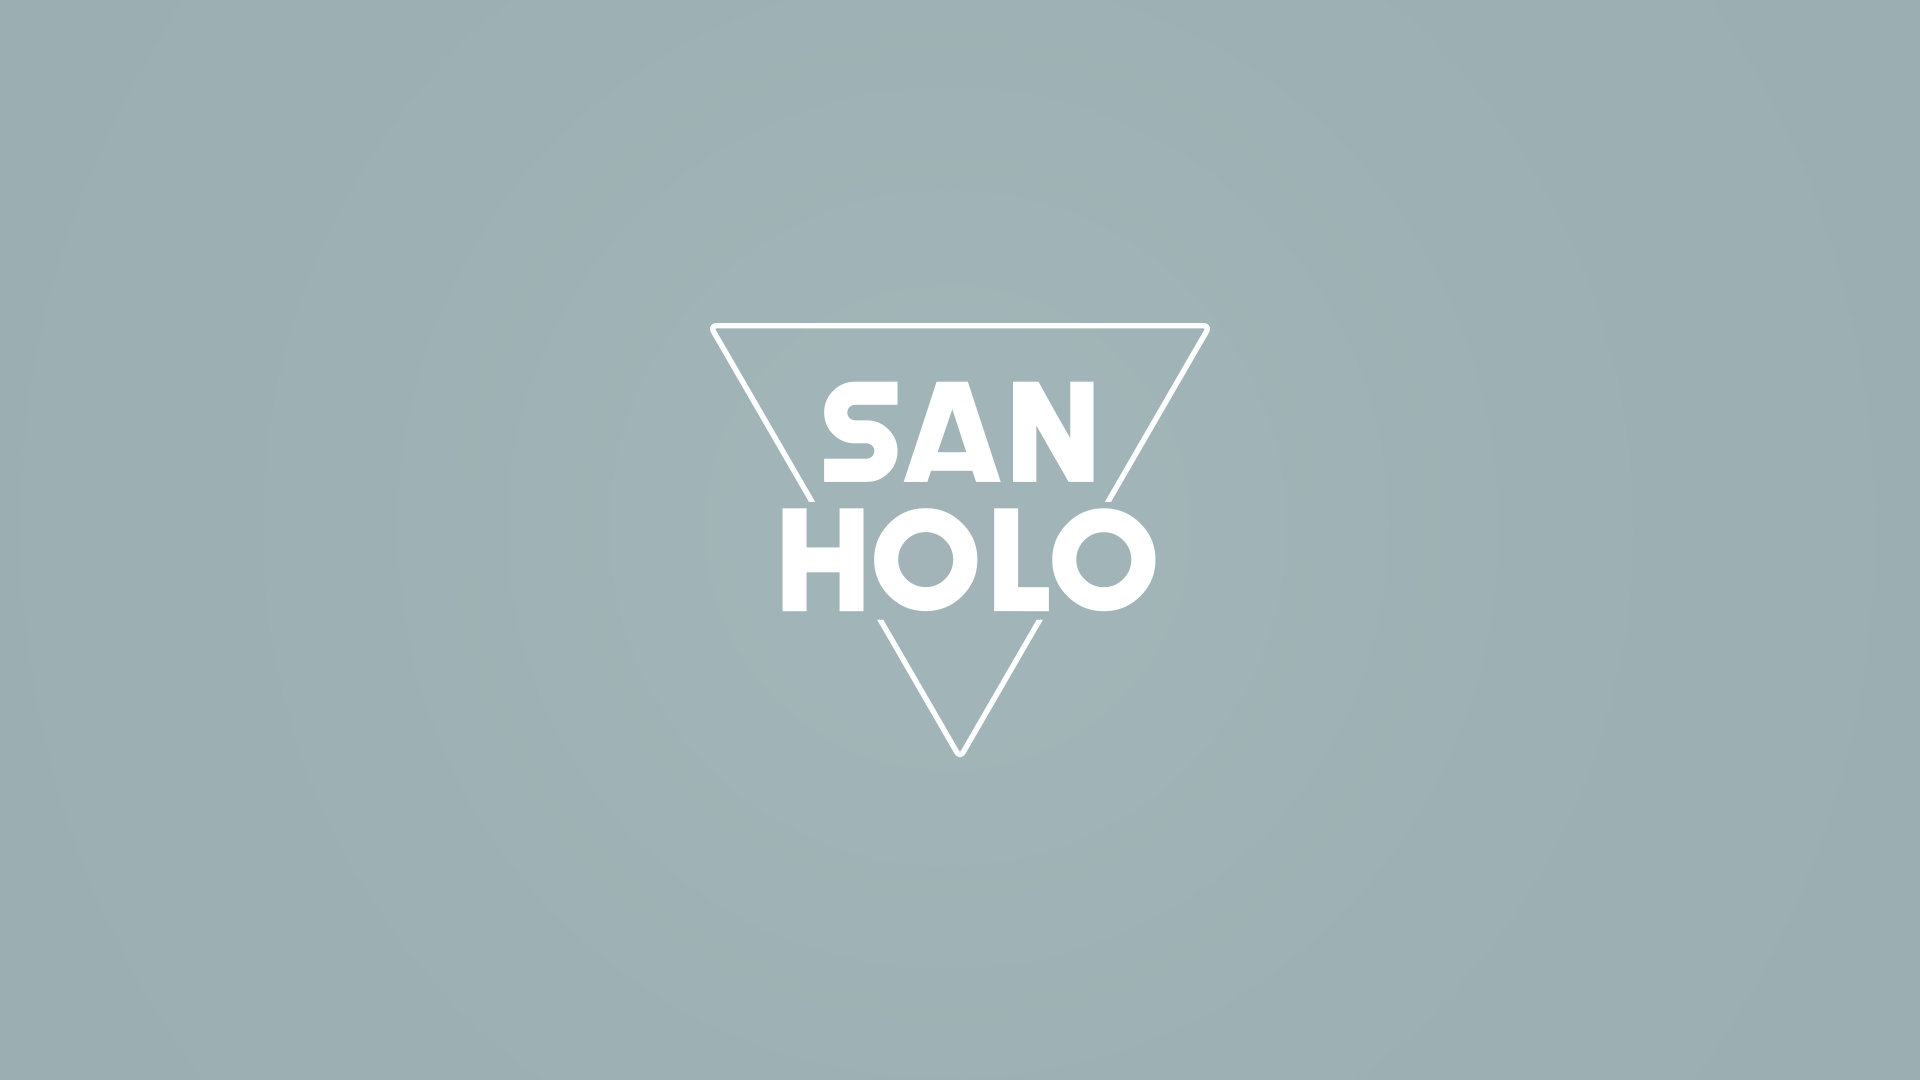 Песня холо. San Holo. Holo Group логотип. Оригинальное лого Holo. Логотип Holo token.